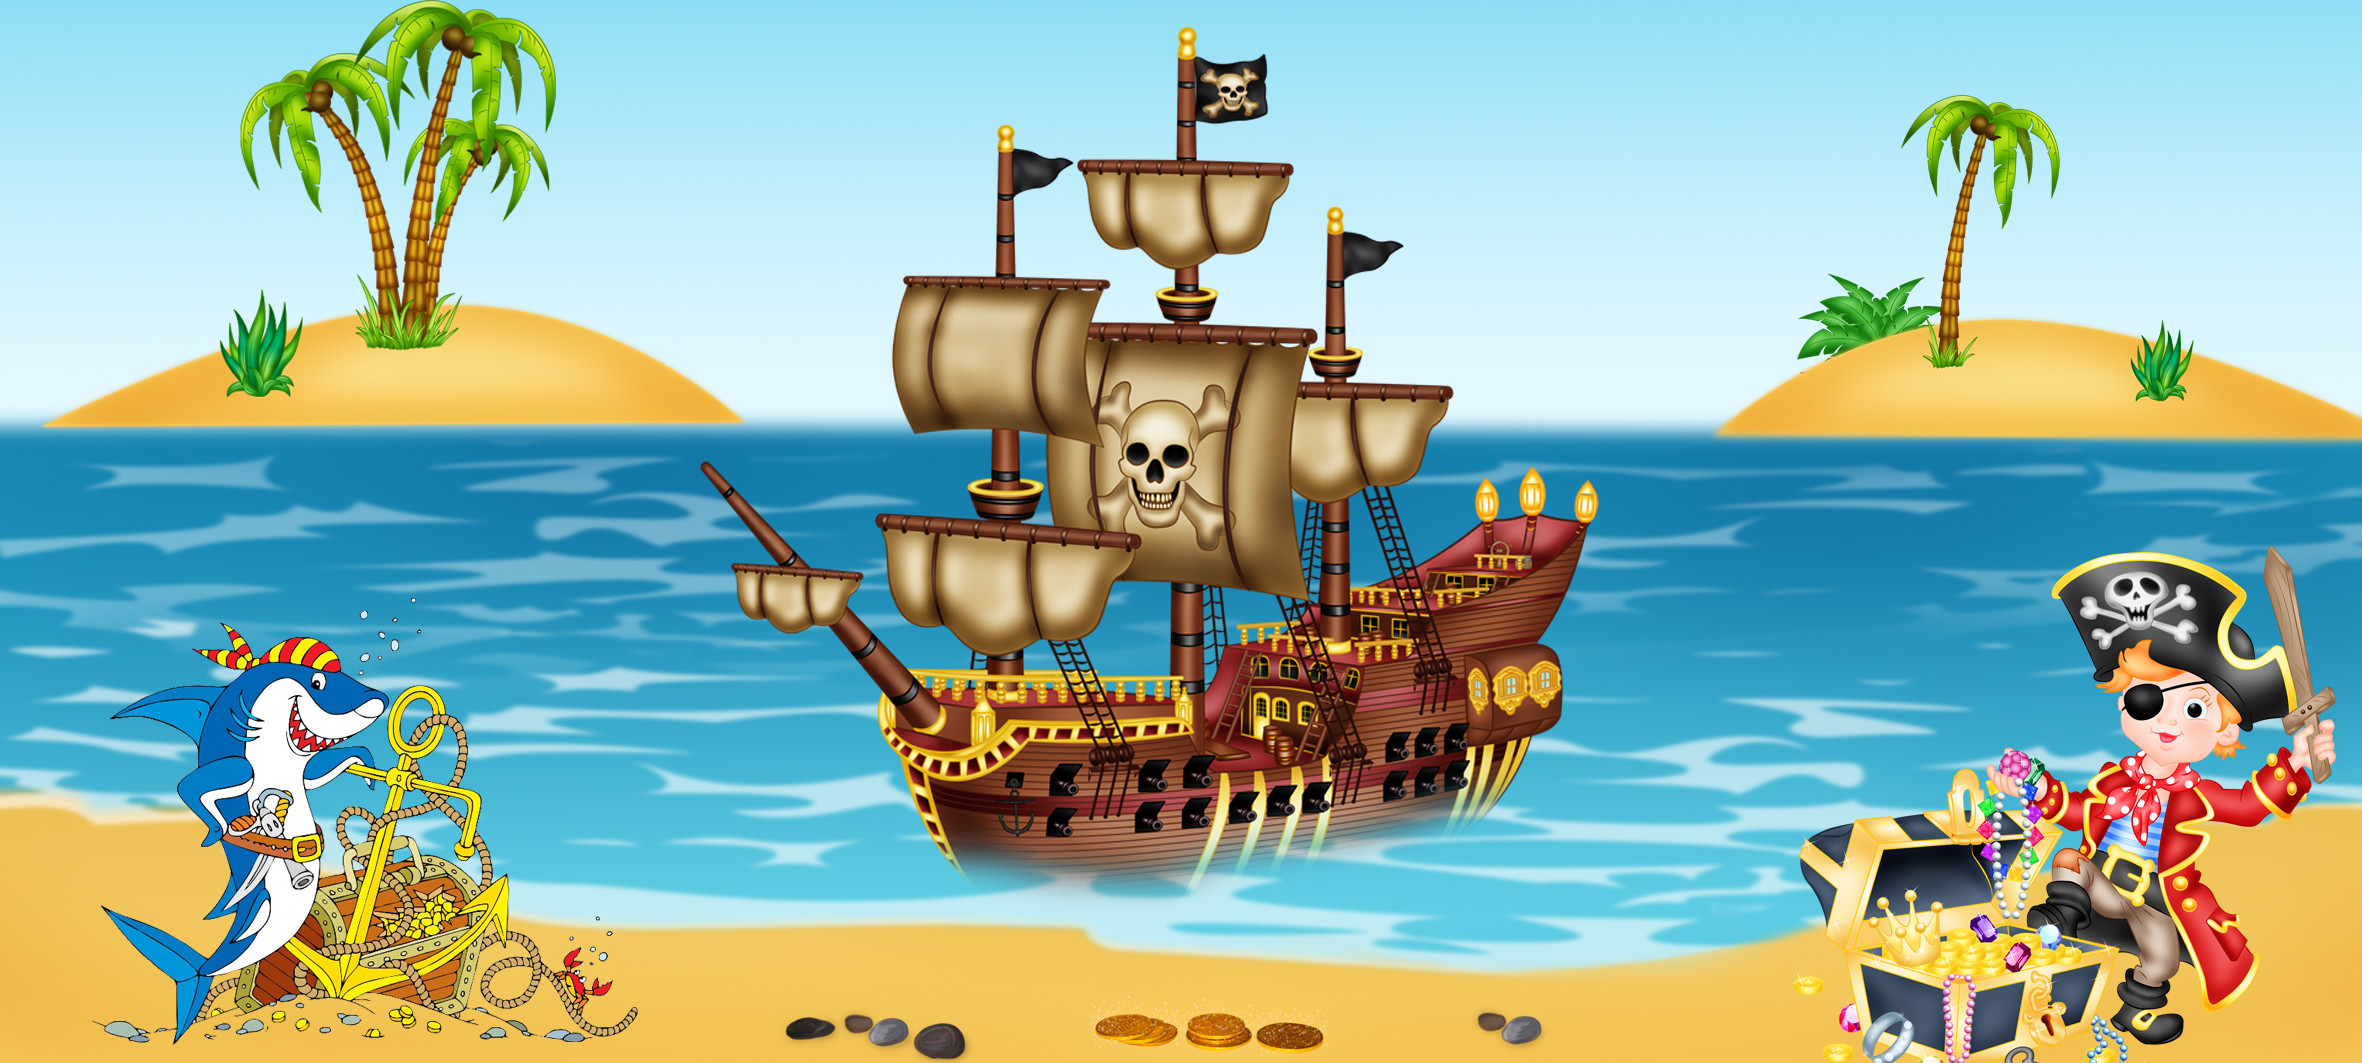 Приключения морское путешествие. Стивенсон пираты остров сокровищ. Пираты на острове сокровищ. Пиратский остров остров сокровищ. Остров сокровищ пираты клад.